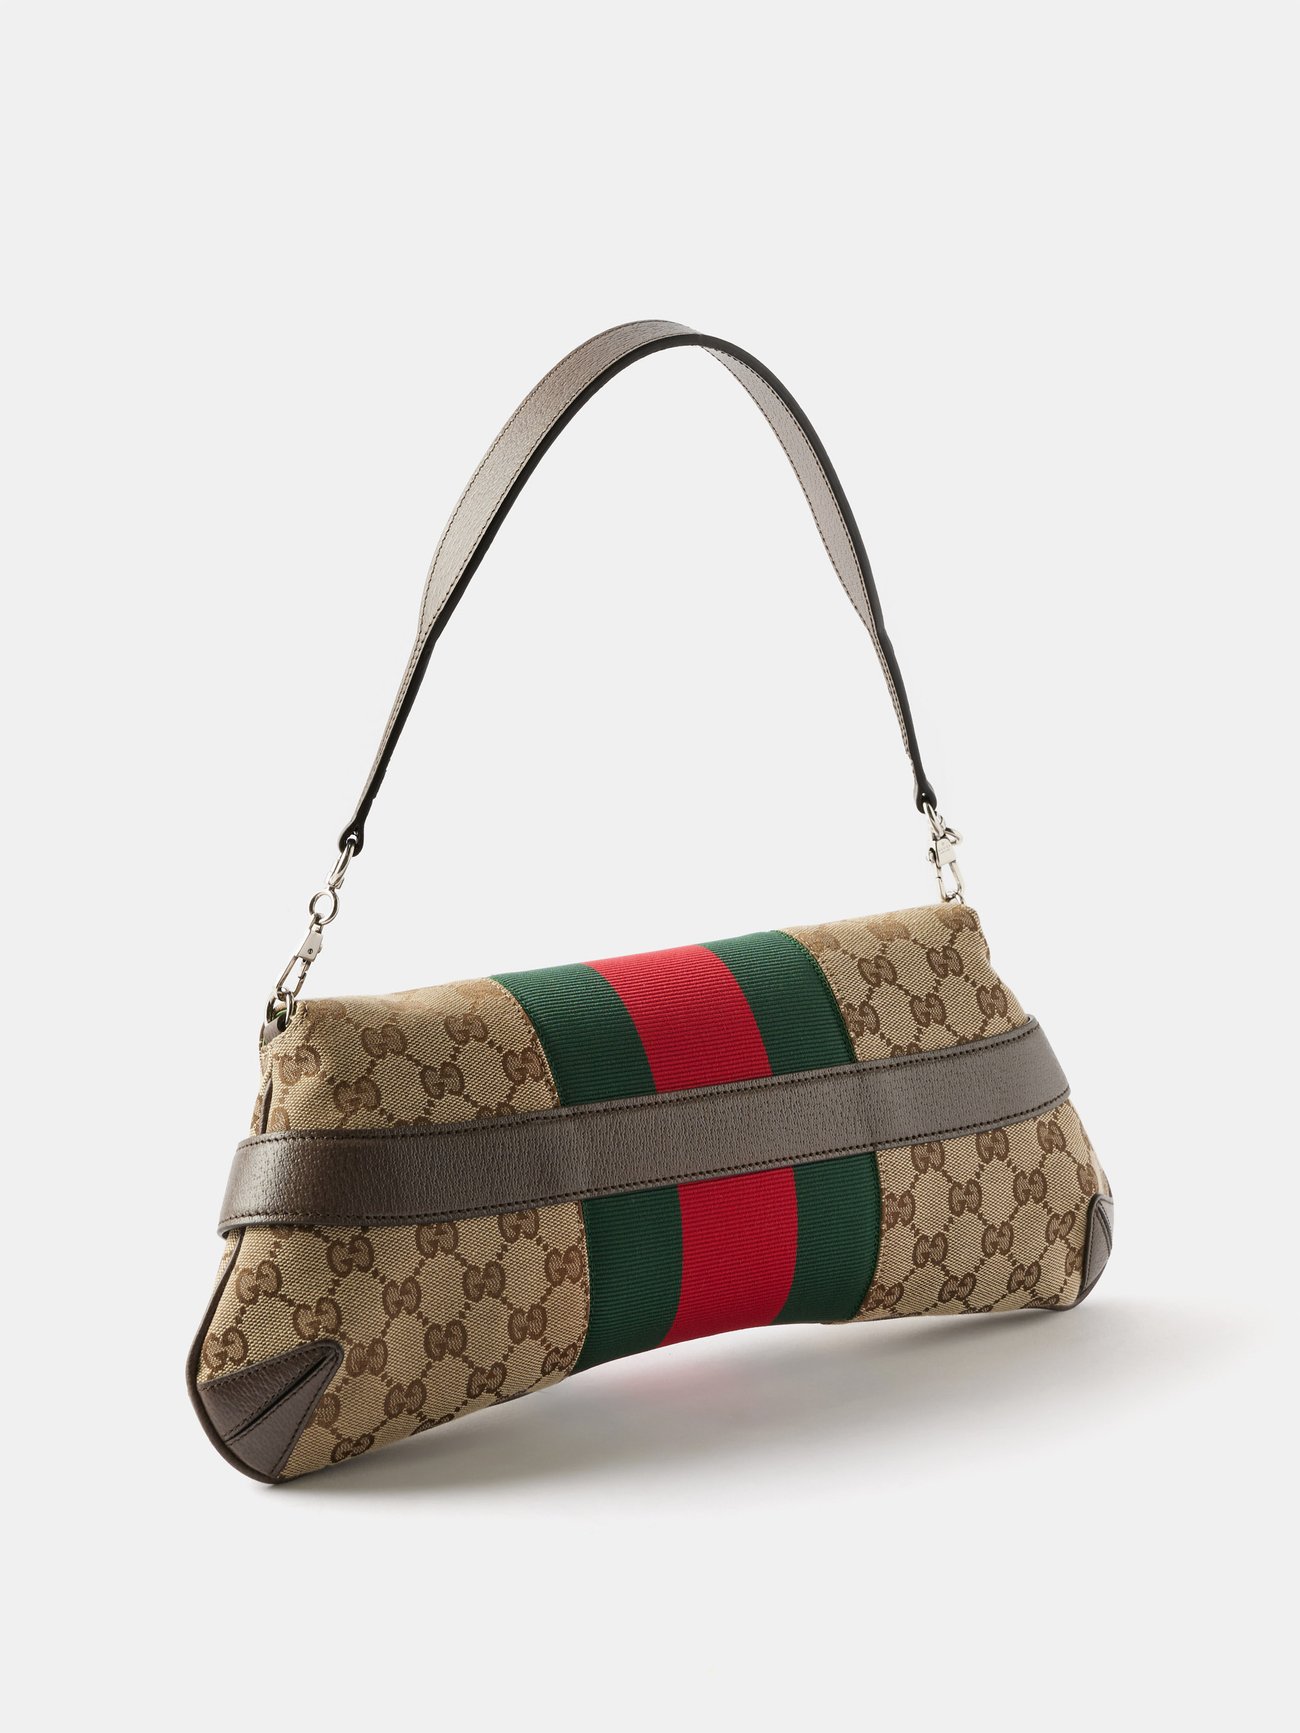 Gucci Horsebit 1955 mini bag for Men - Brown in UAE